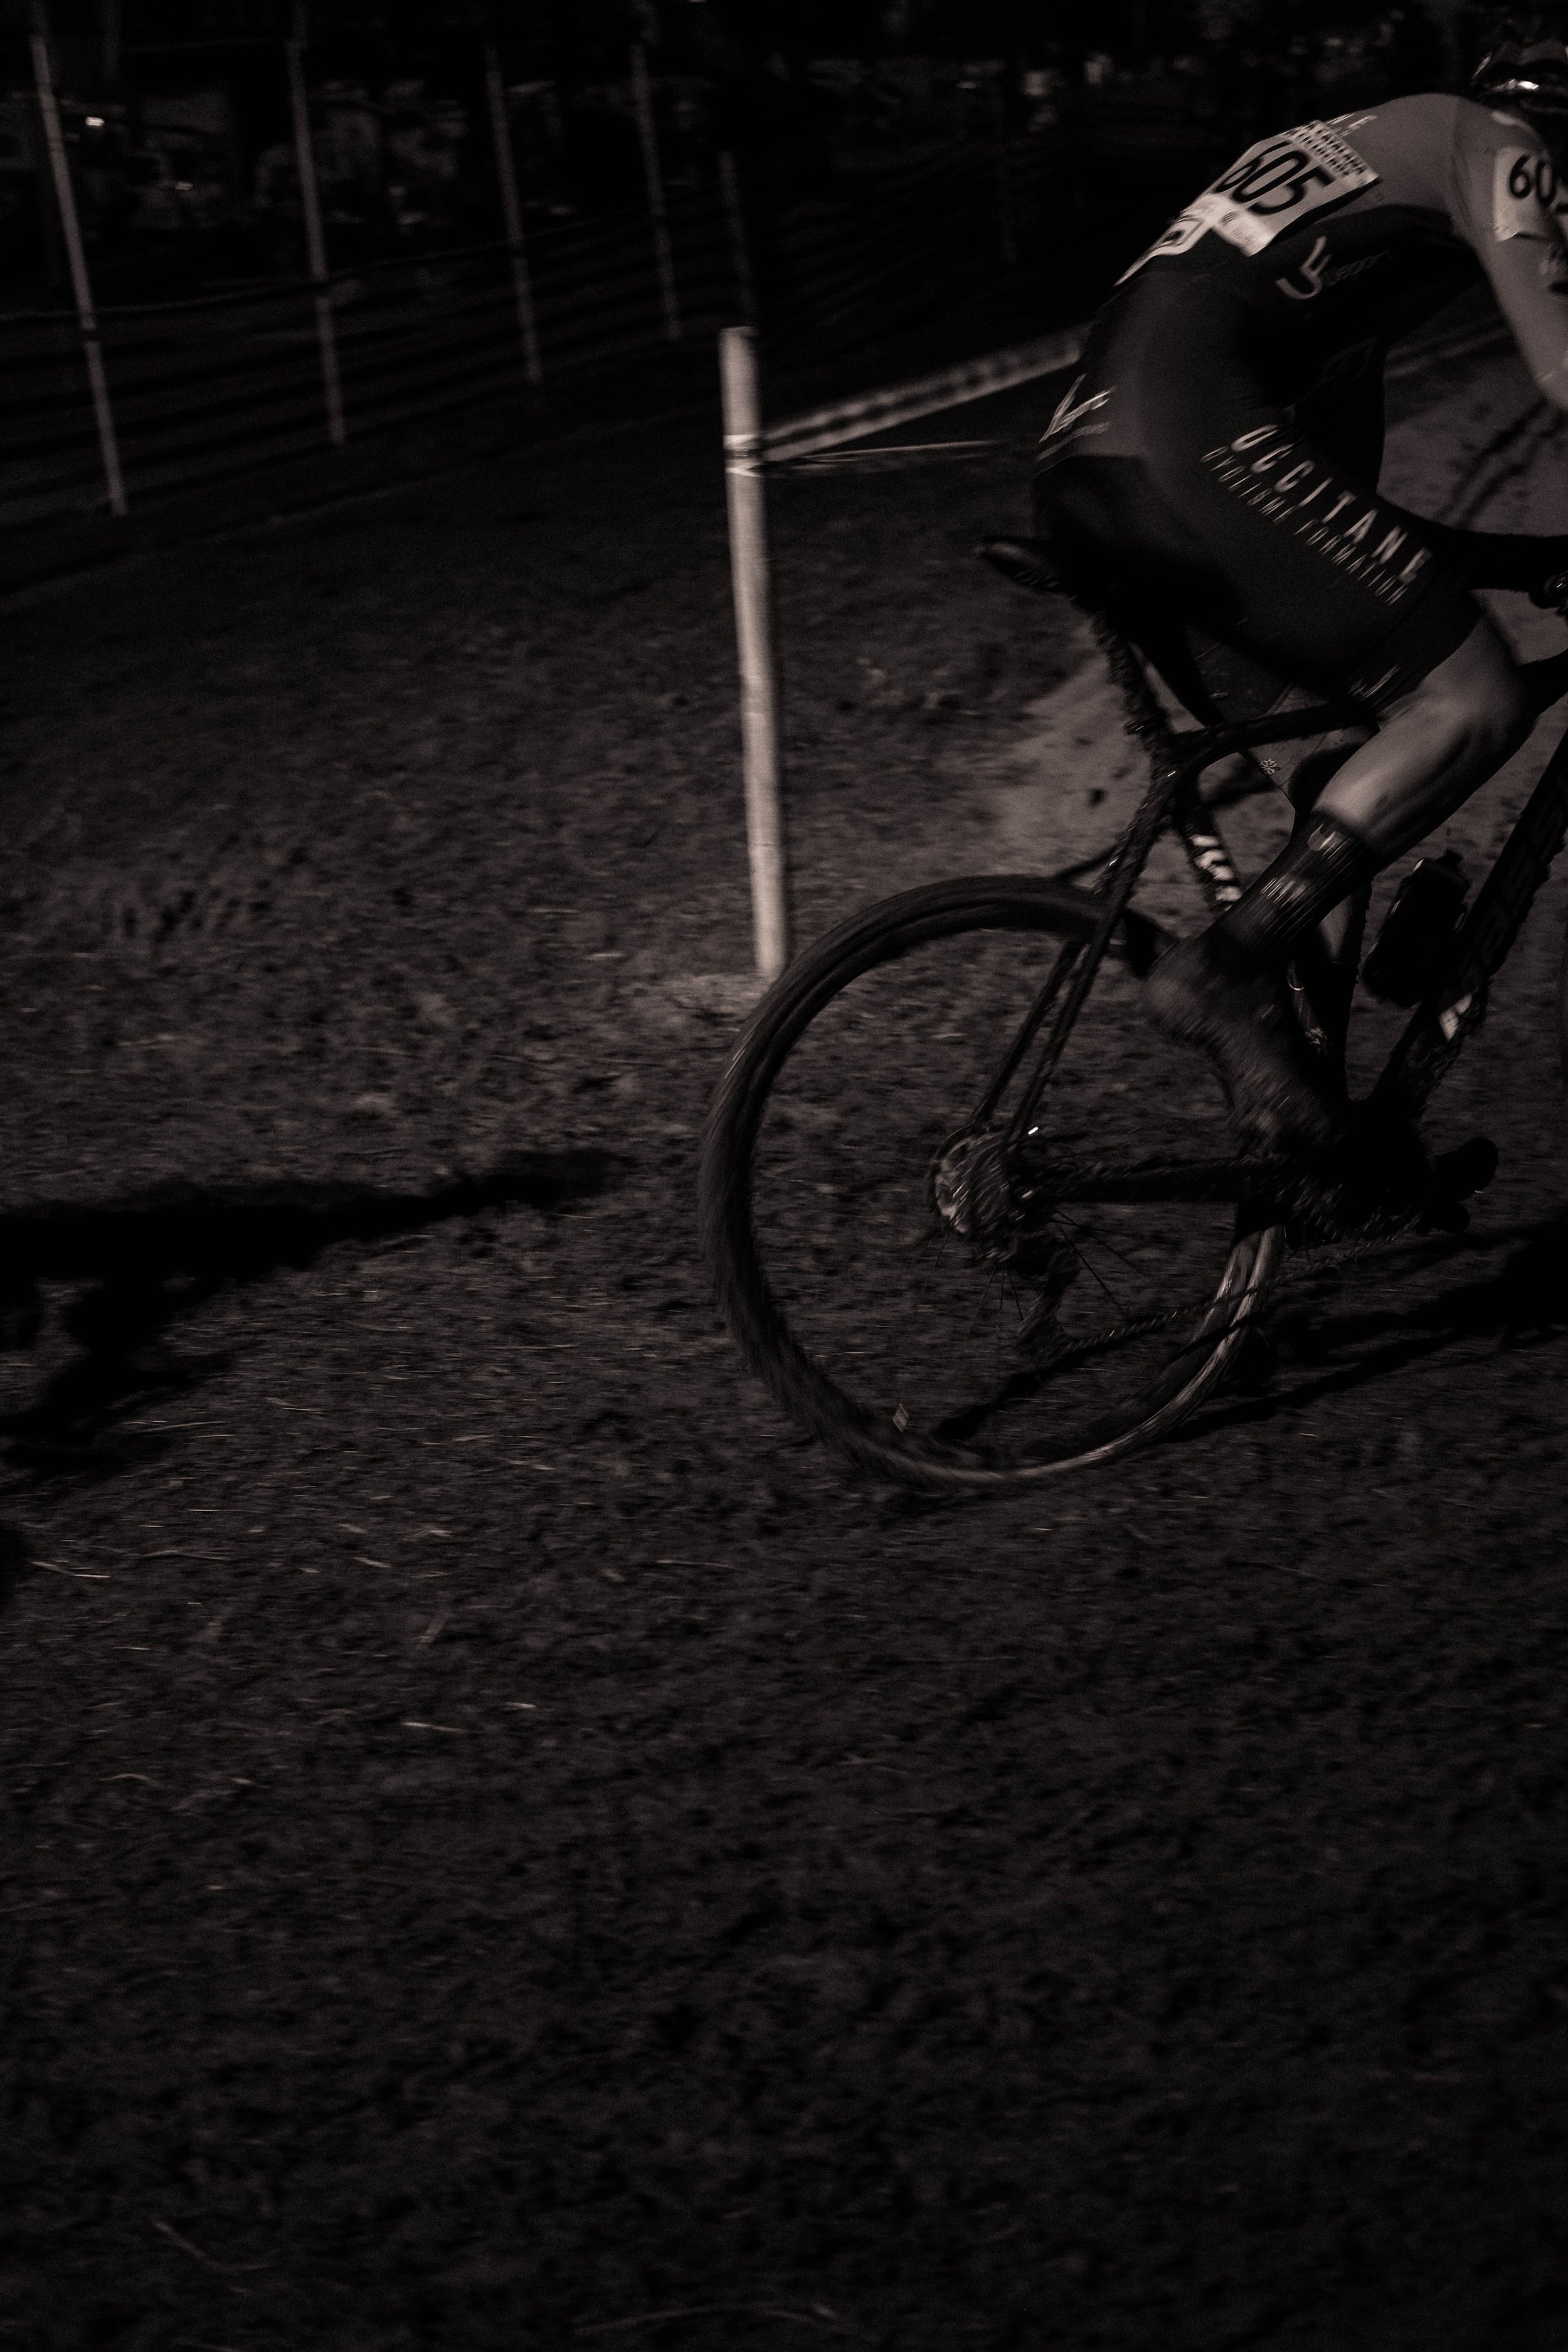 darkcross 21 turocycling-28.jpg